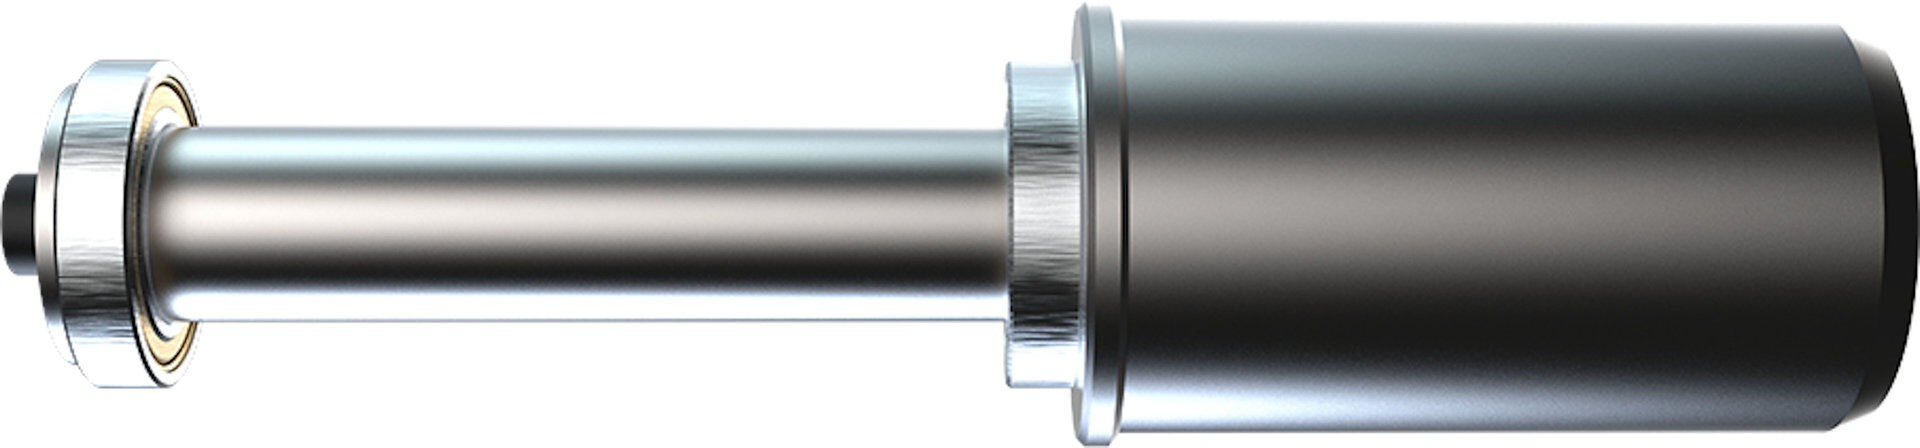 Oxford Zero-G Pin de 53,5 mm para soporte de montaje de basculante único - Plata (un tamaño)